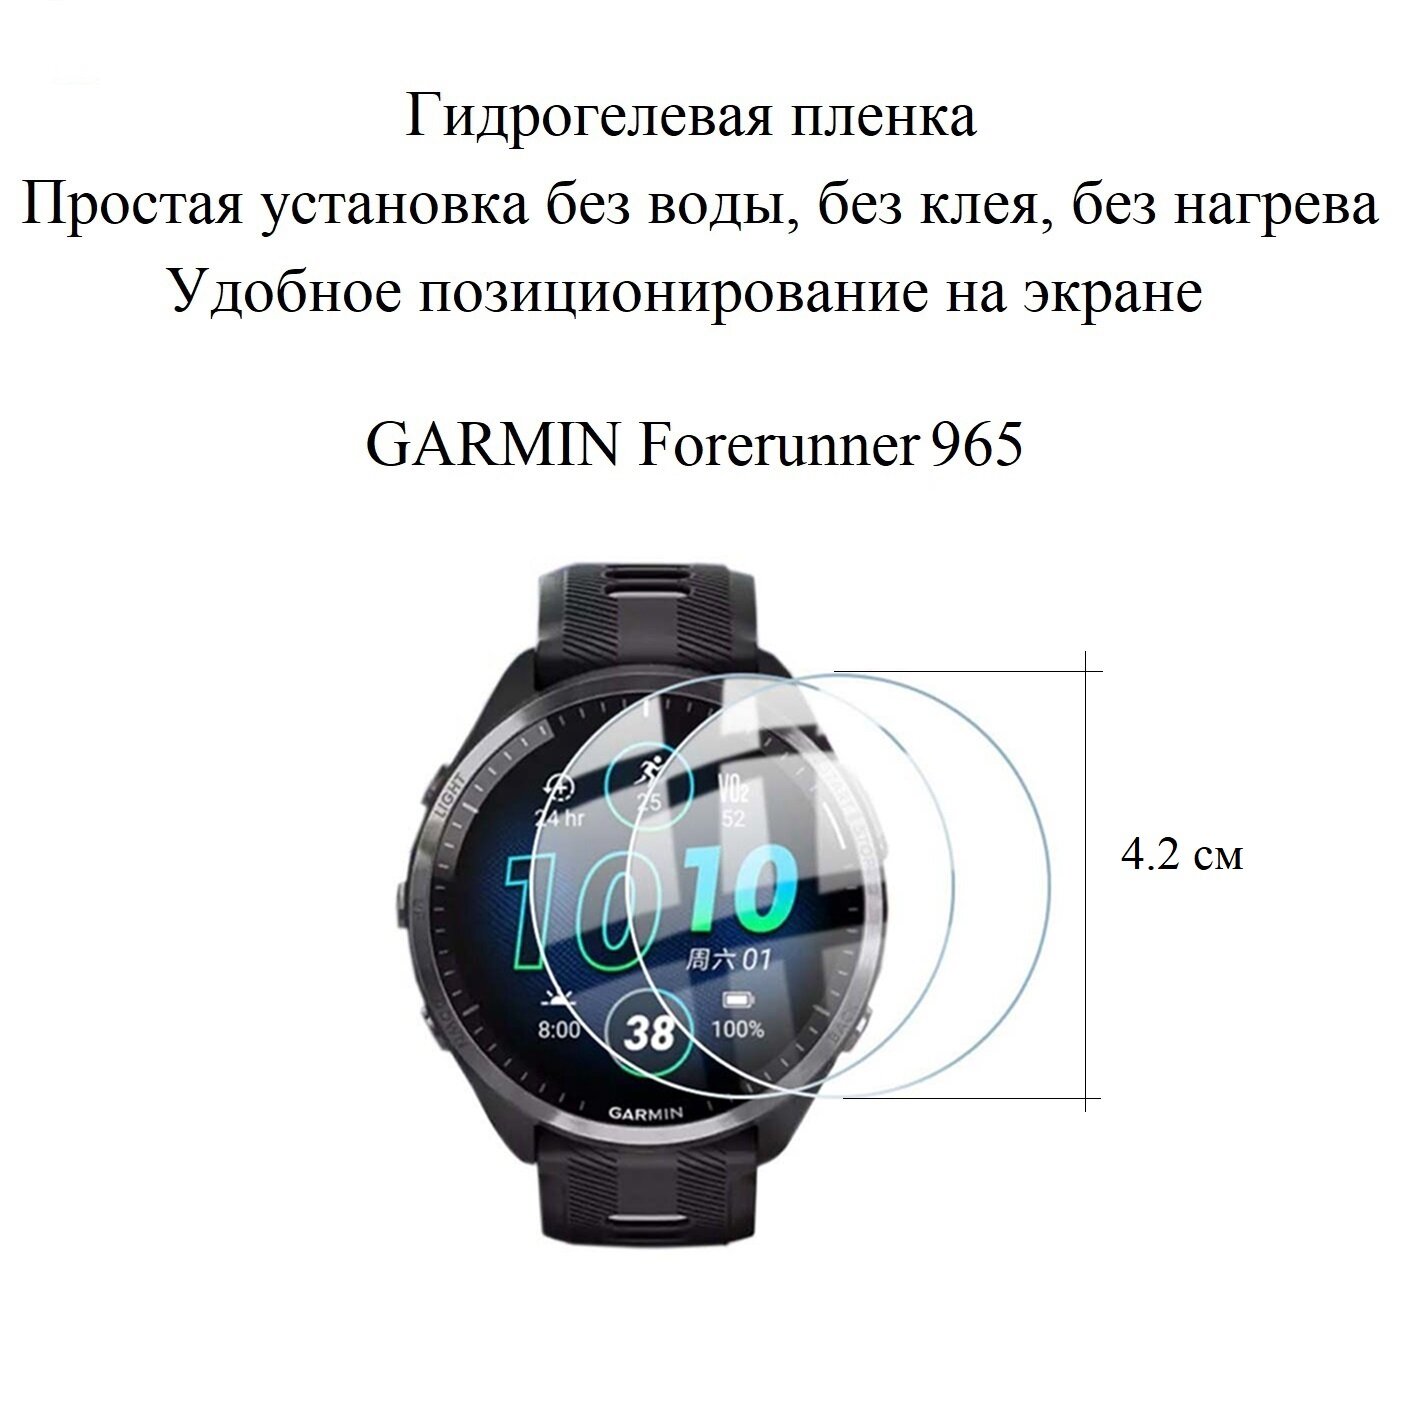 Глянцевая гидрогелевая пленка hoco. на экран смарт-часов GARMIN Forerunner 965 (2шт.)